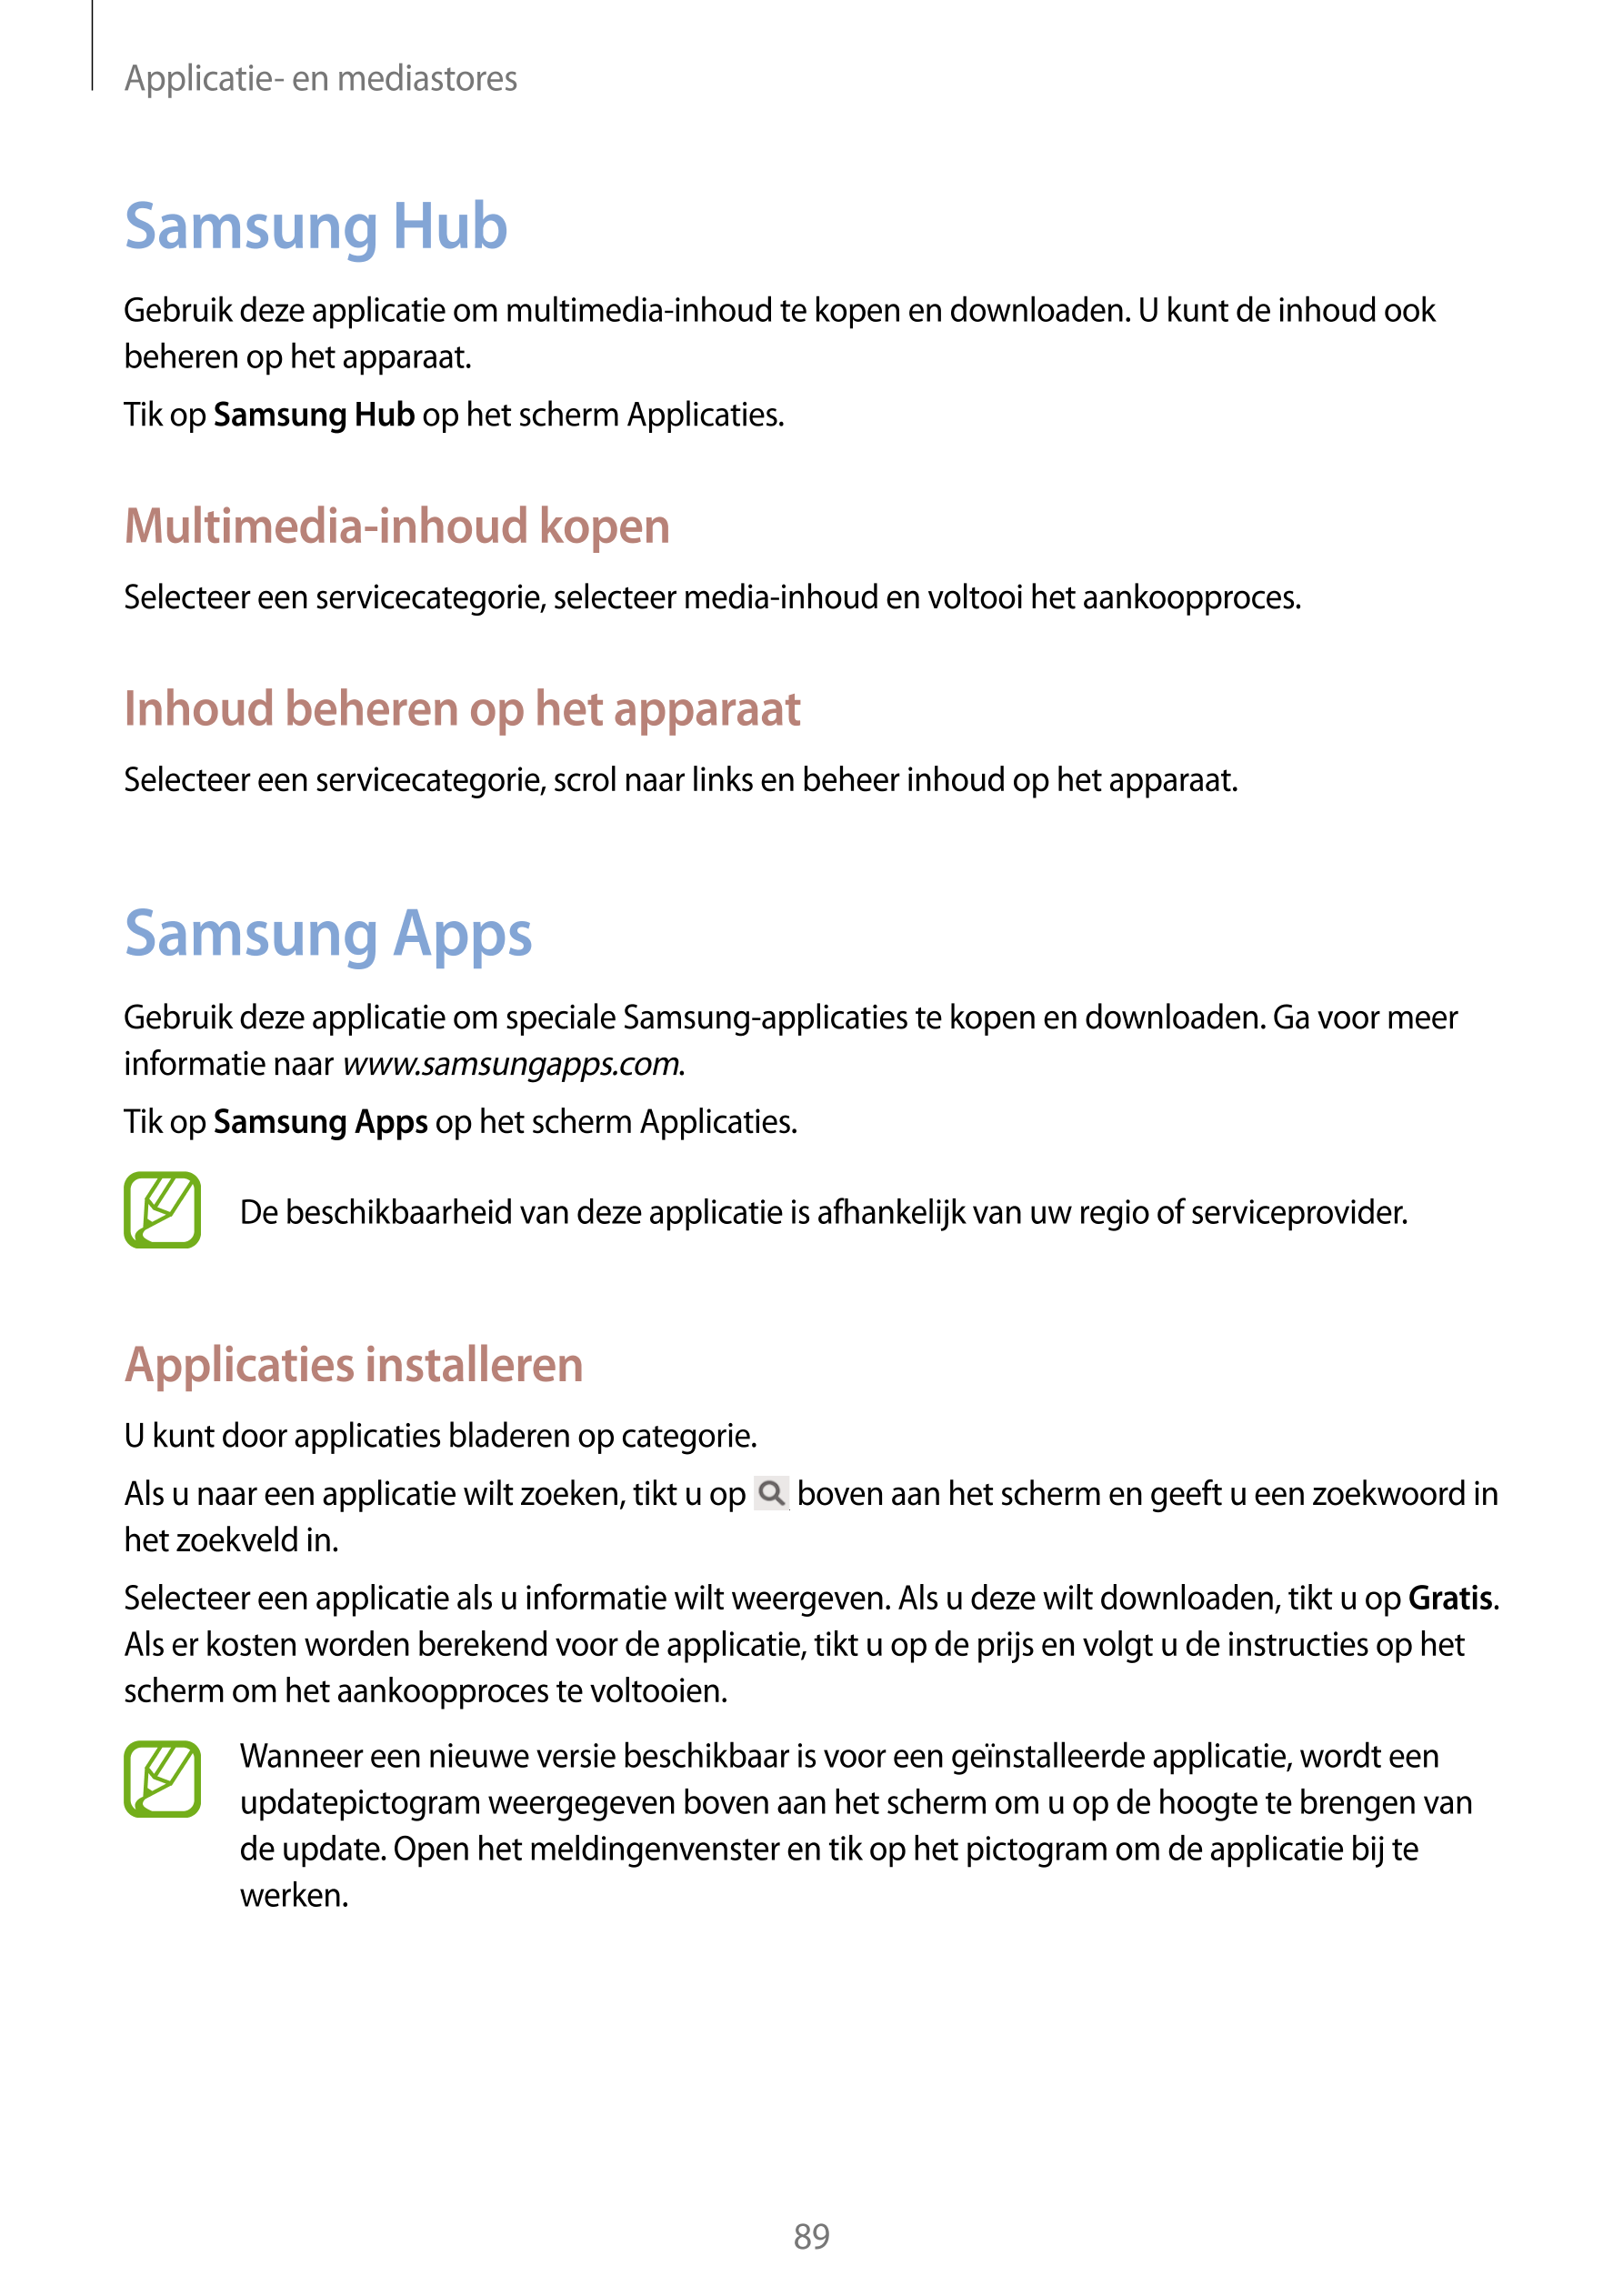 Applicatie- en mediastores
Samsung Hub
Gebruik deze applicatie om multimedia-inhoud te kopen en downloaden. U kunt de inhoud ook